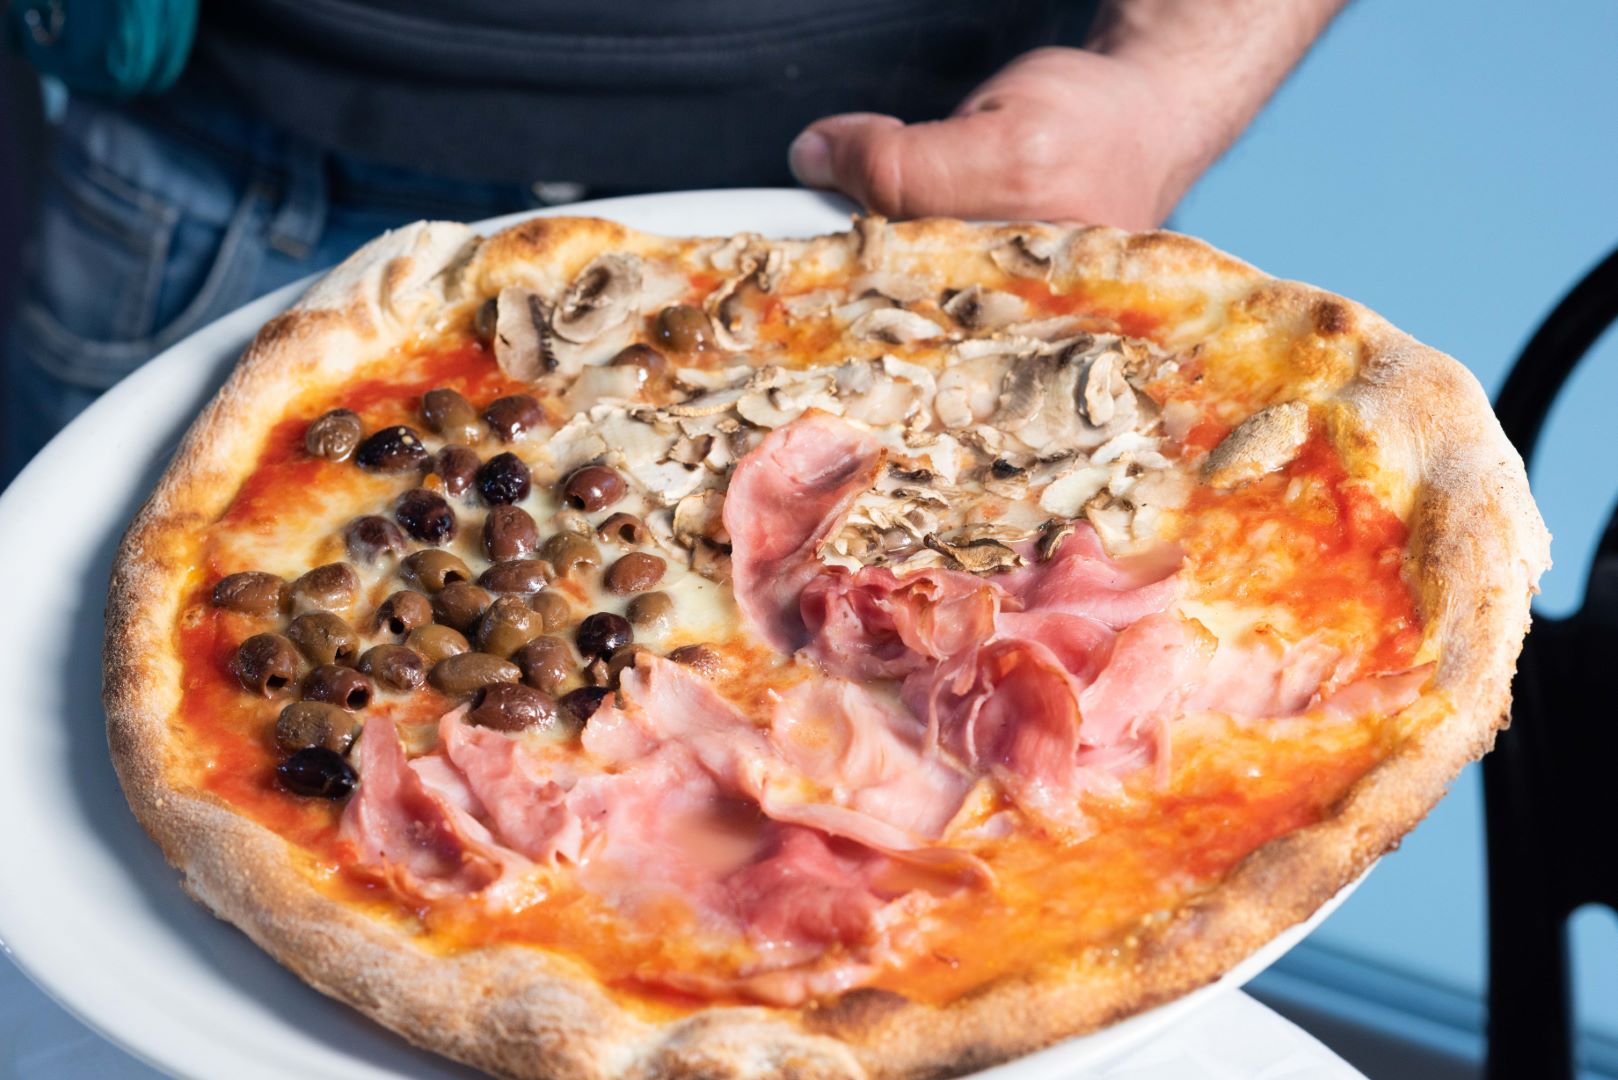 Dove gustare la migliore pizza senza glutine a Torino? Da Michi e senza indugio